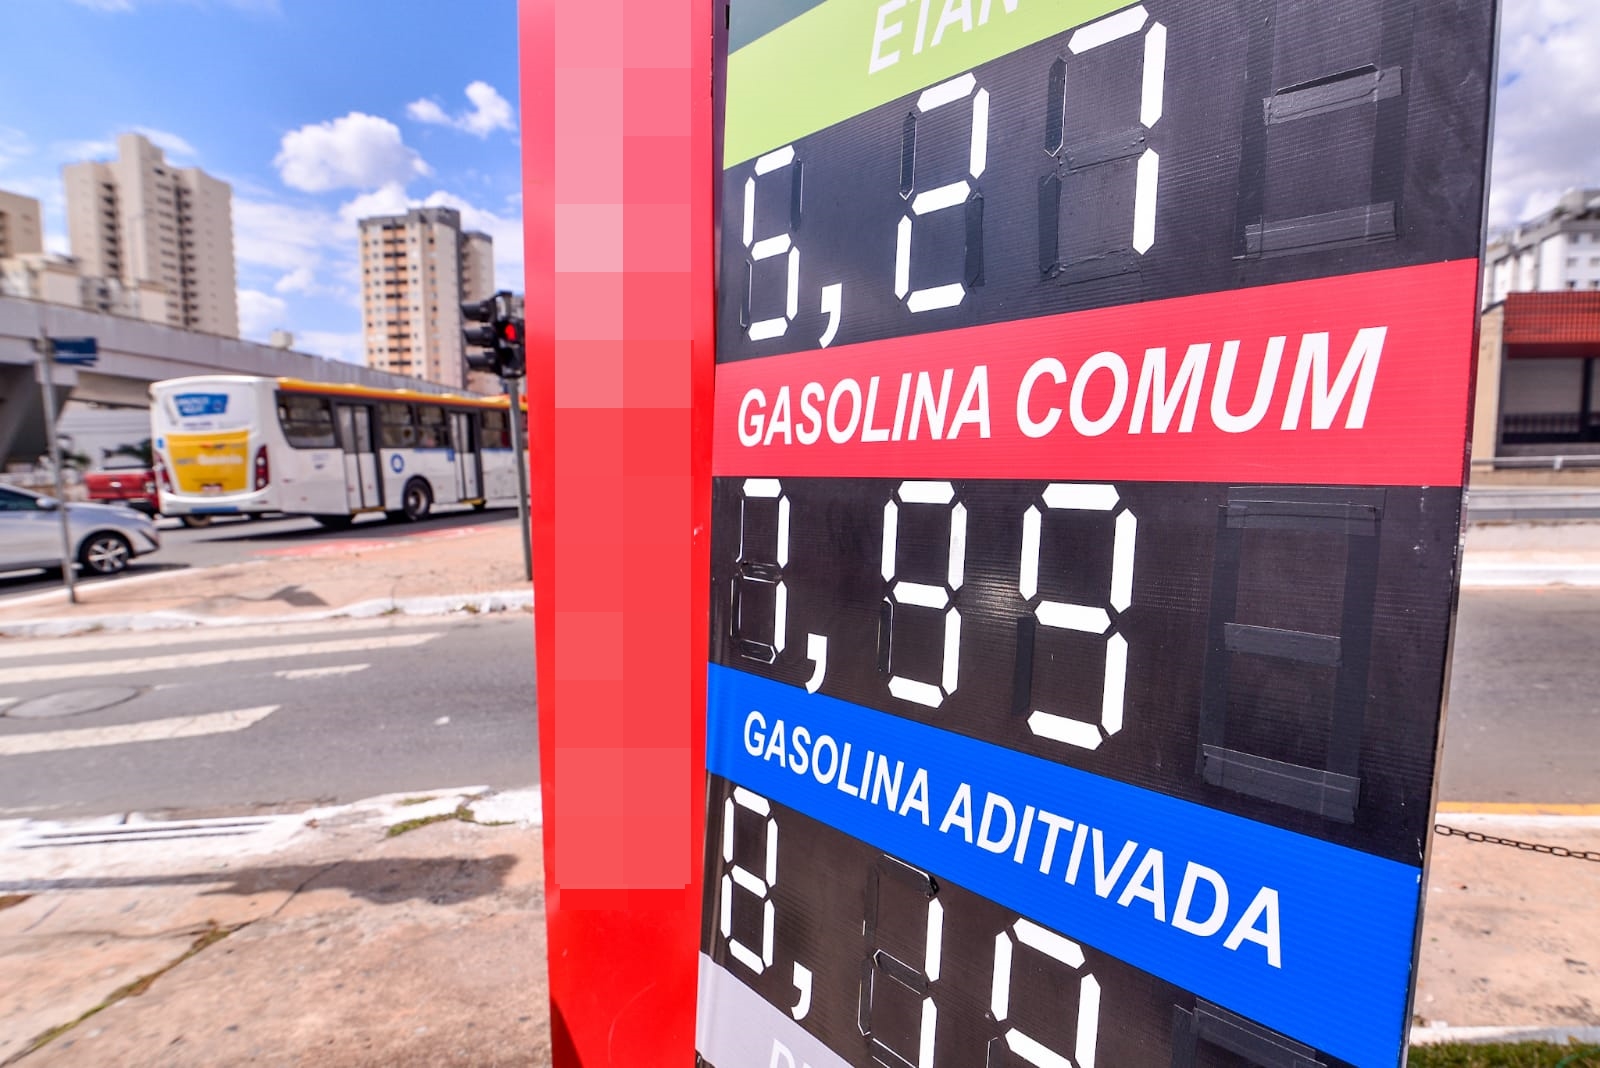 Gasolina comum em Goiânia - tendência é de que preço continue subindo, aponta Sindiposto (Foto: Jucimar de Sousa/Mais Goiás)